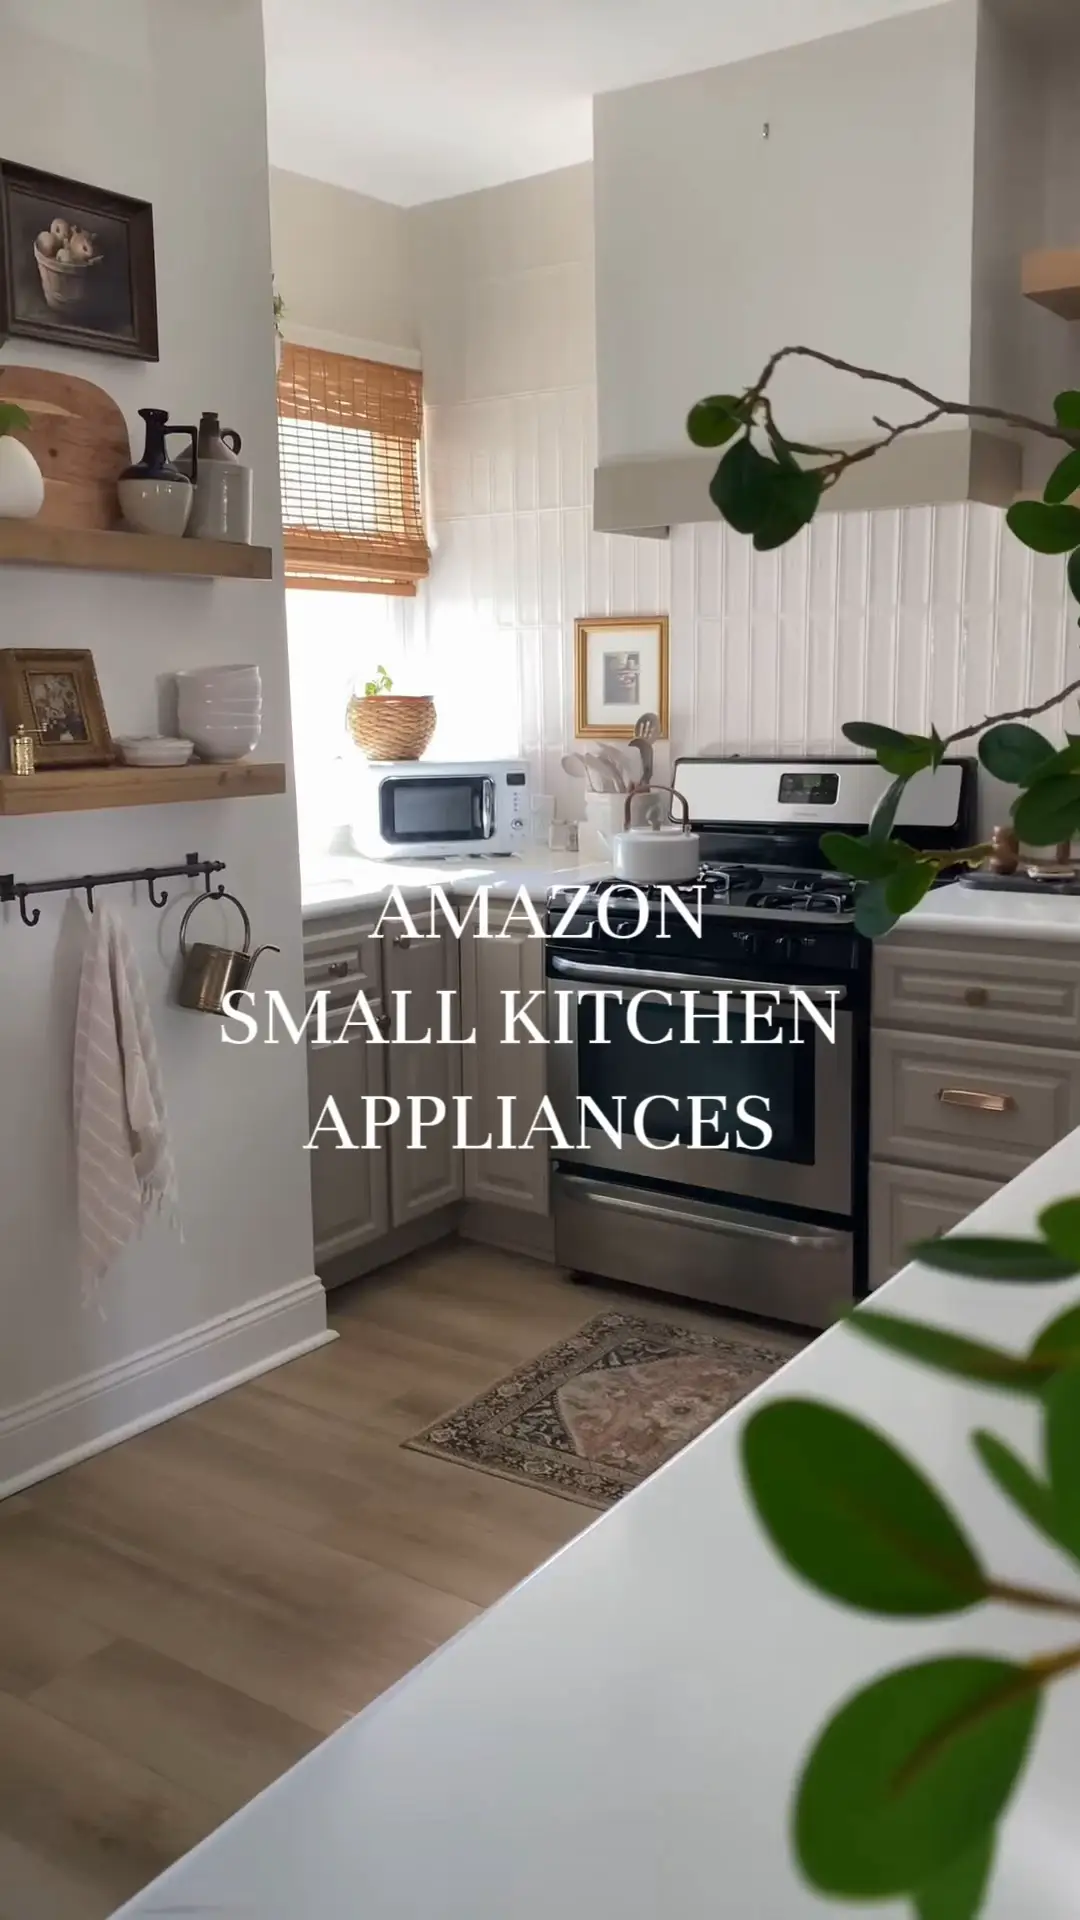 kitchen appliances - Lemon8 Search